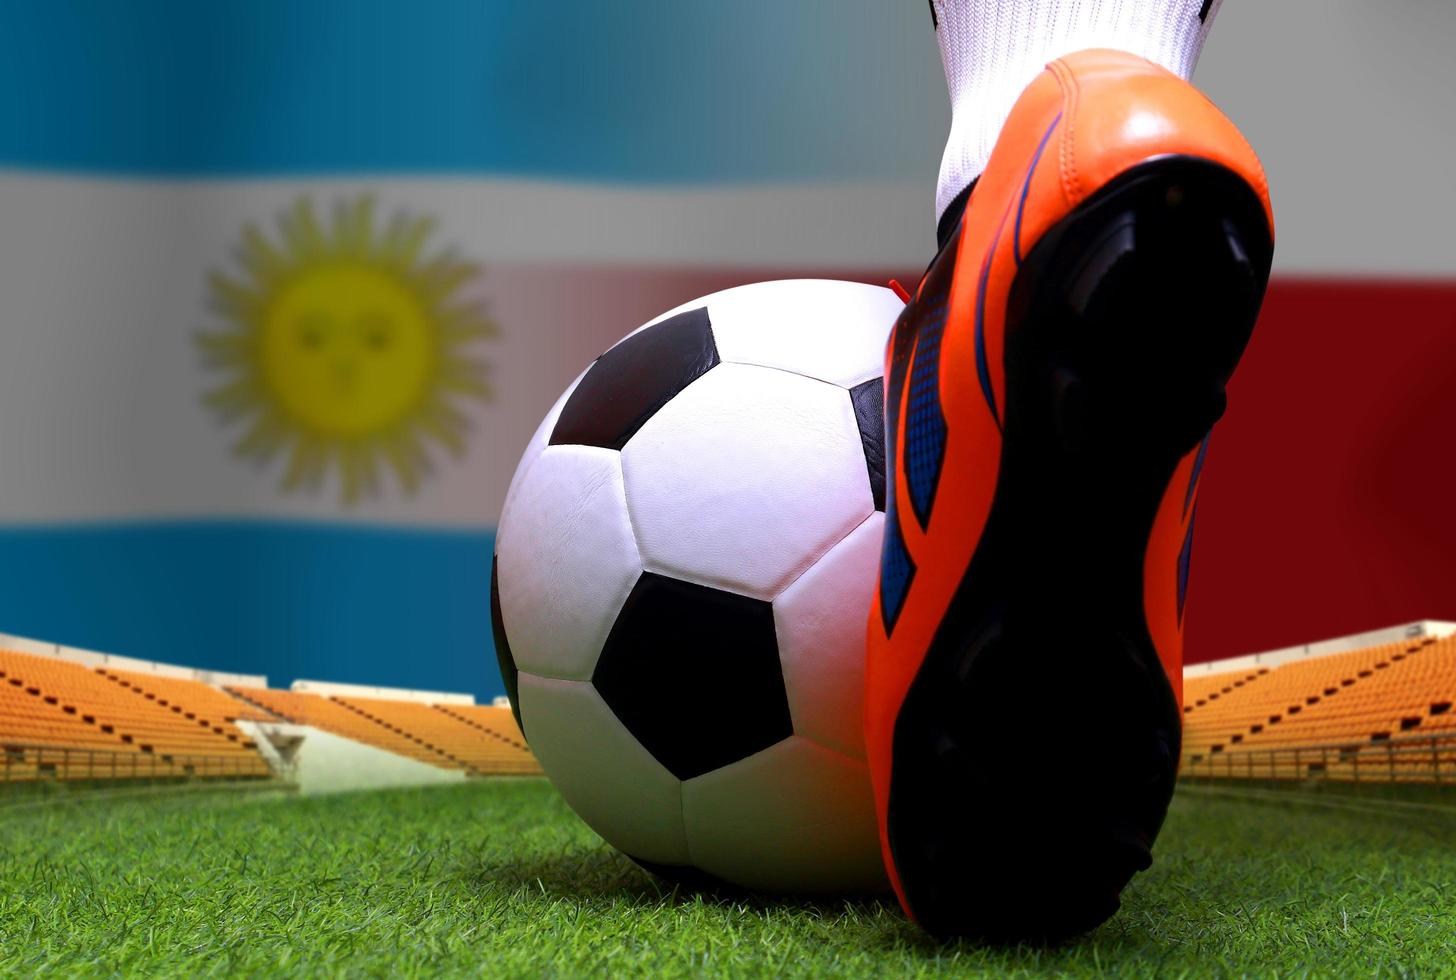 competencia de copa de futbol entre el nacional argentino y el nacional de polonia. foto